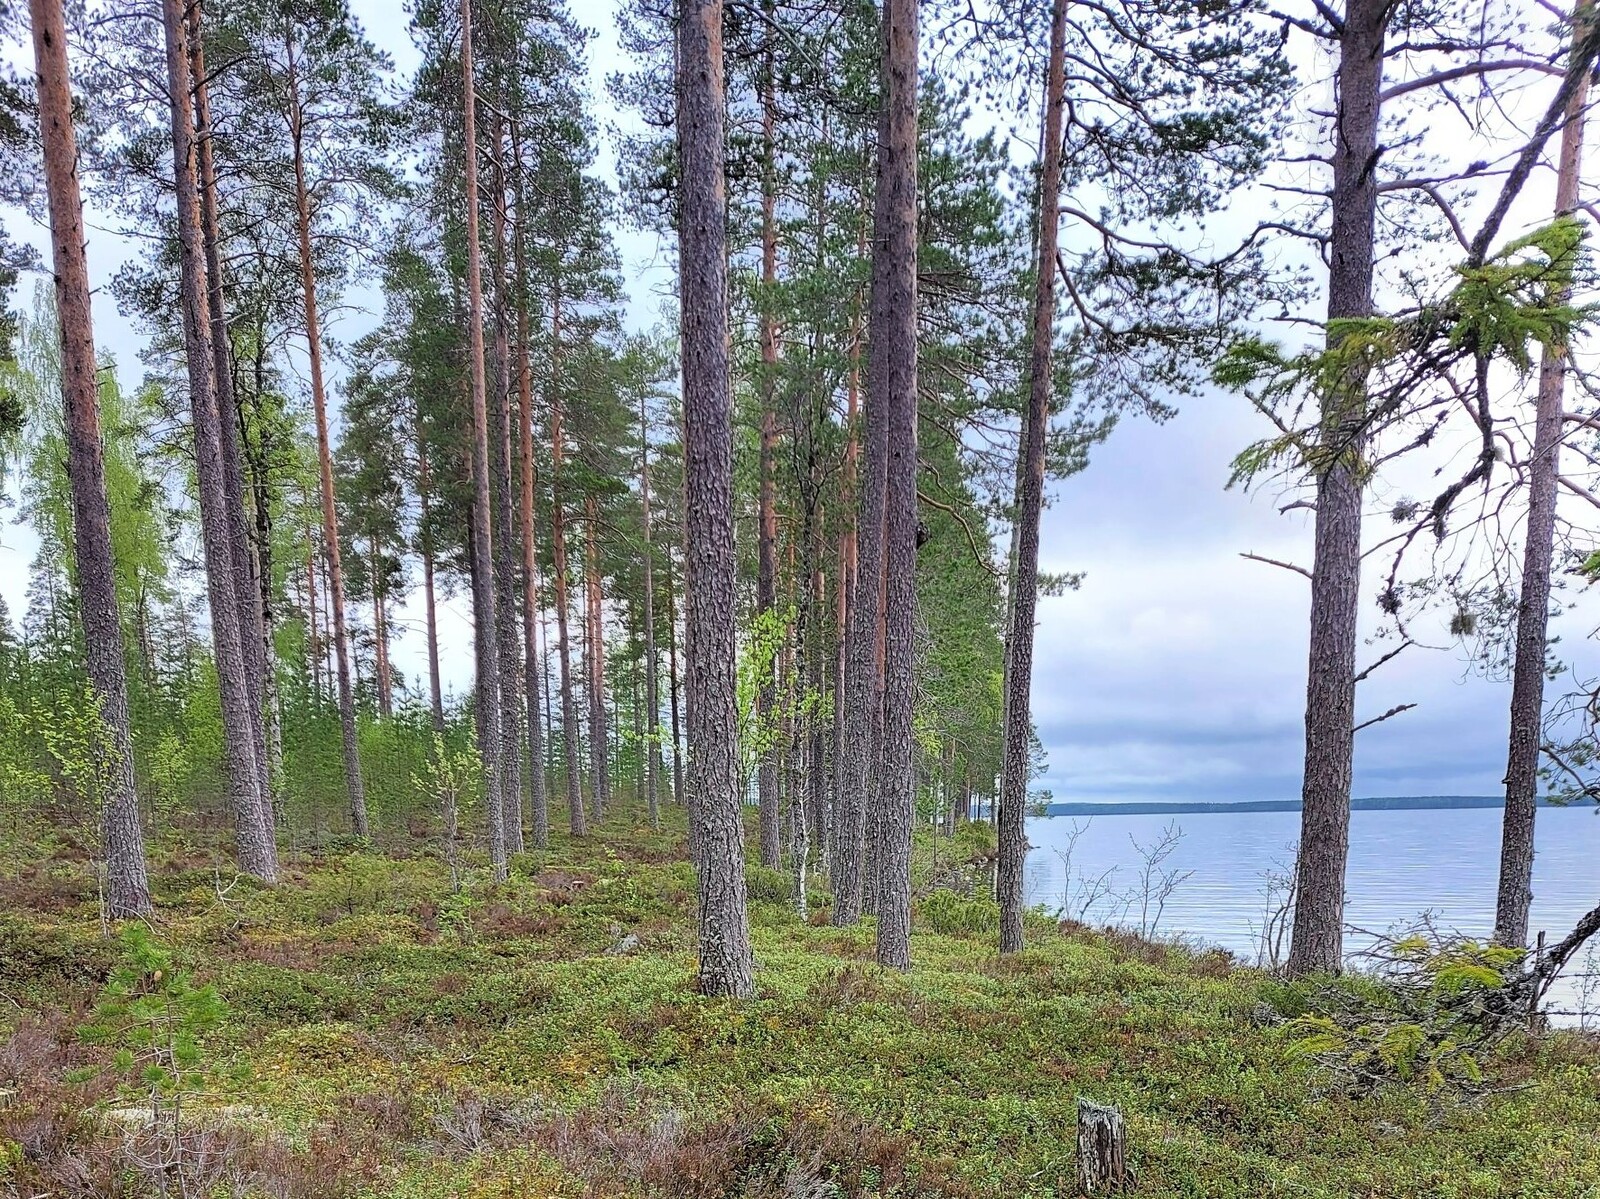 Järven ranta-aluetta, jossa on mäntyjä ja puolukkakanga
Mäntyjä on väljästi, helppokulkuinen maasto.